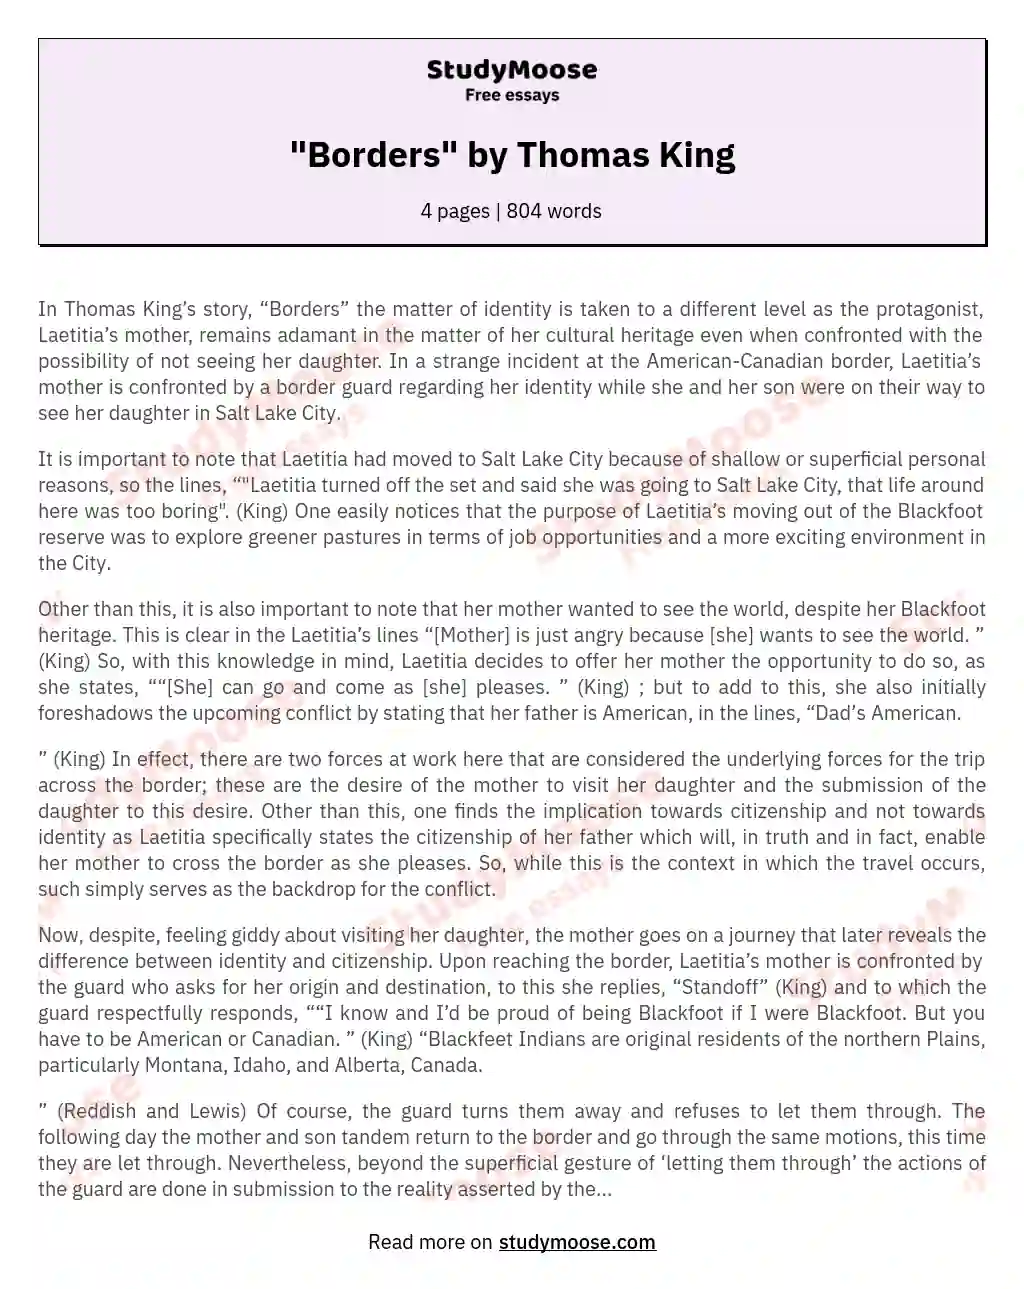 "Borders" by Thomas King essay